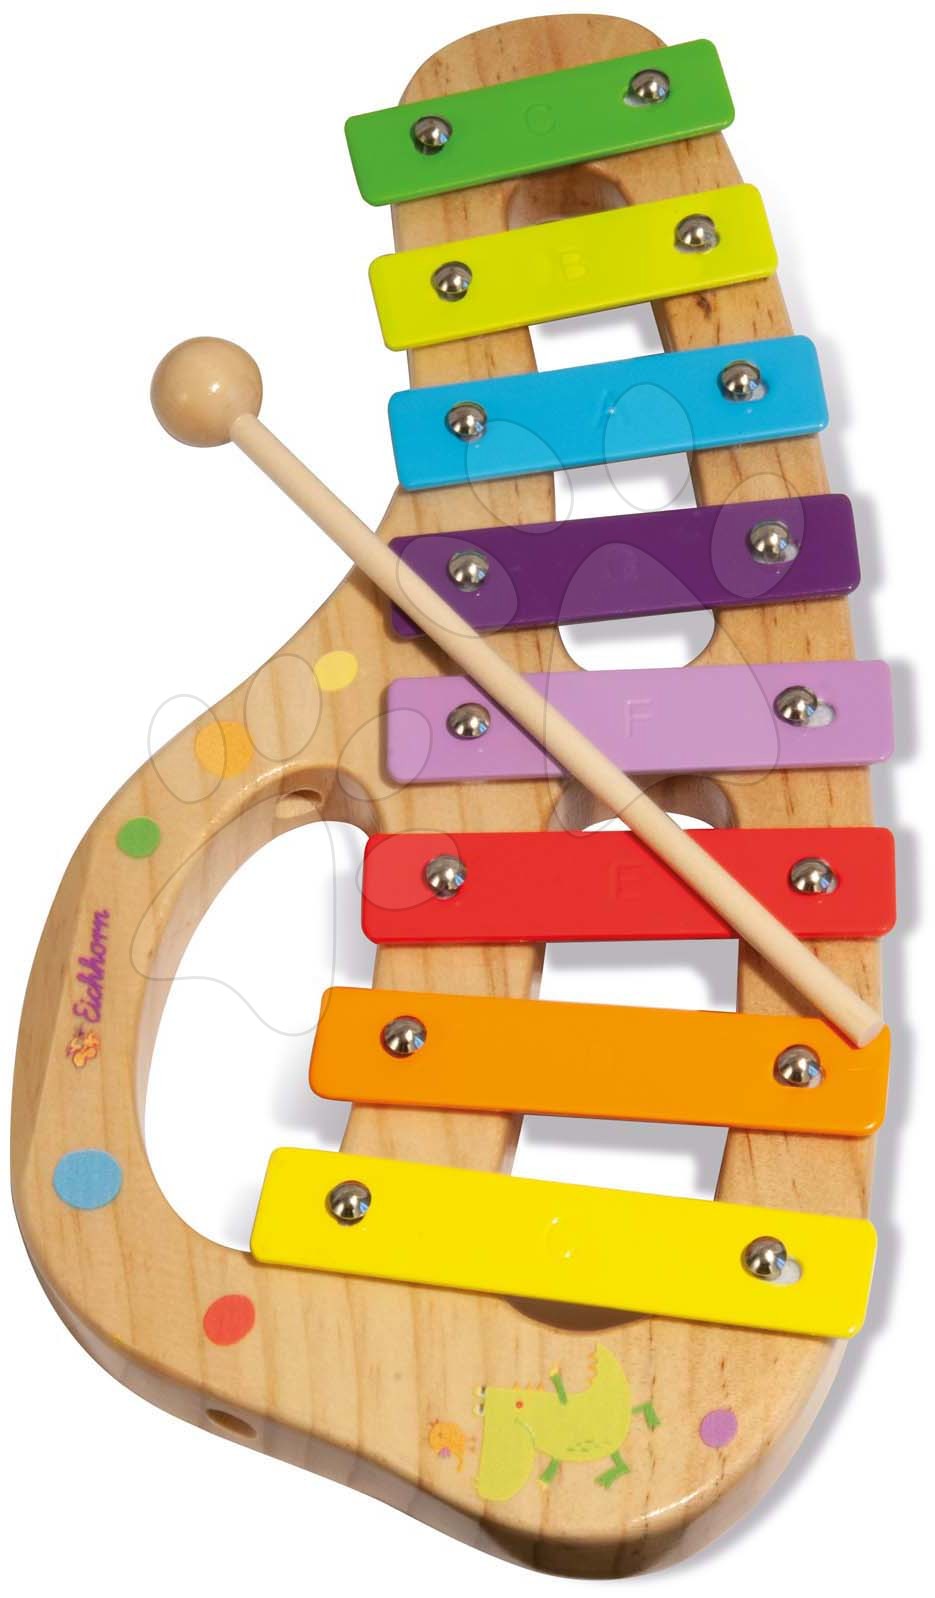 Dětské hudební nástroje - Dřevěný xylofon Music Xylophone Eichhorn barevný 8 tónů s kladívkem od 24 měsíců